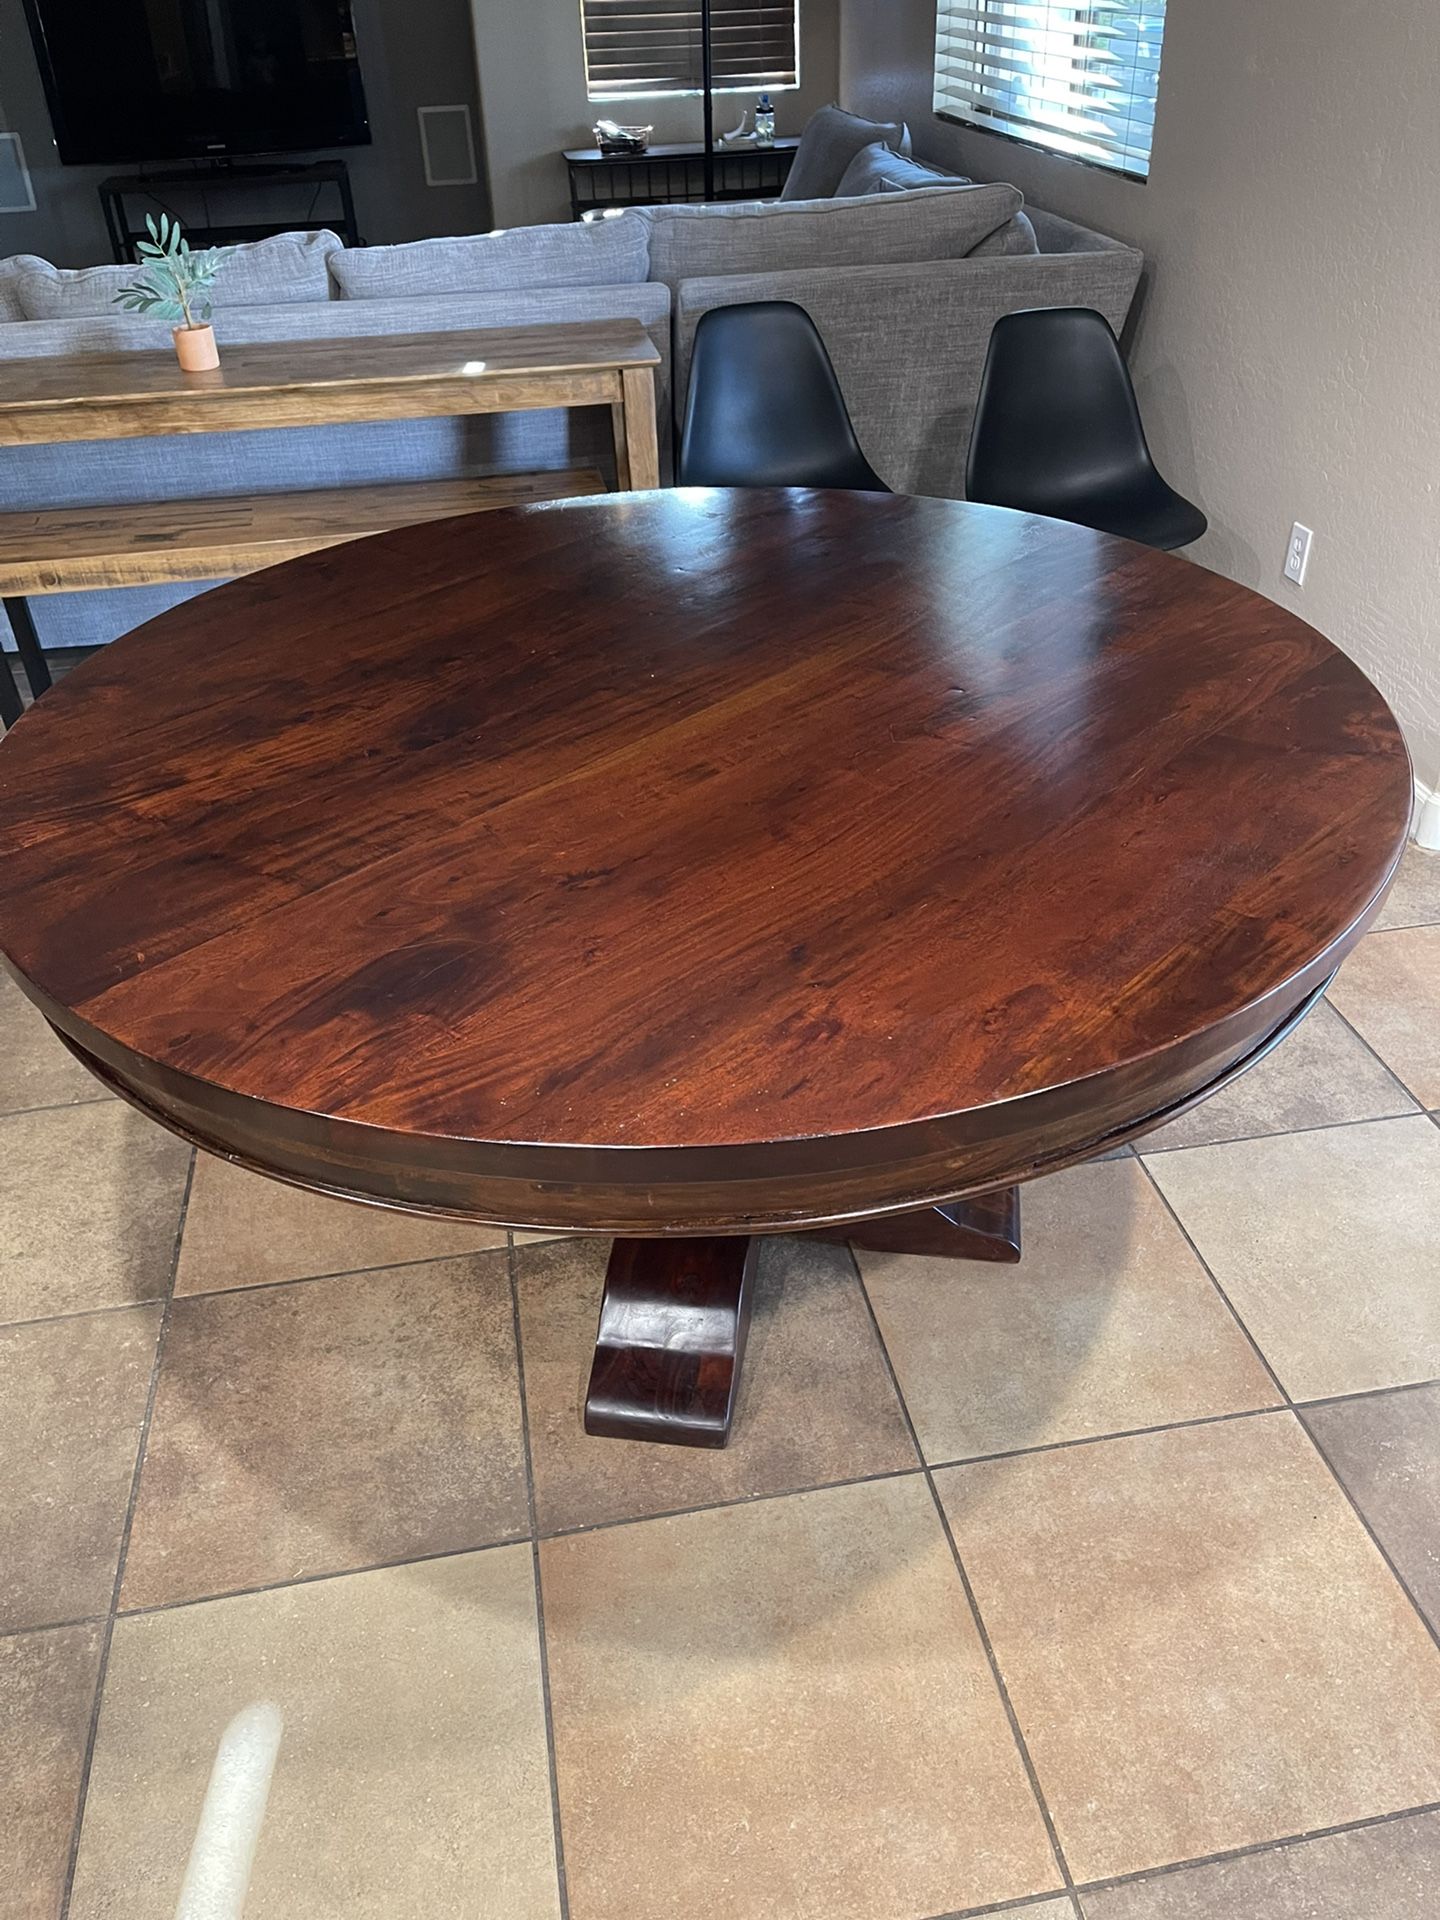 60” Round Dark Solid Wood Kitchen Table